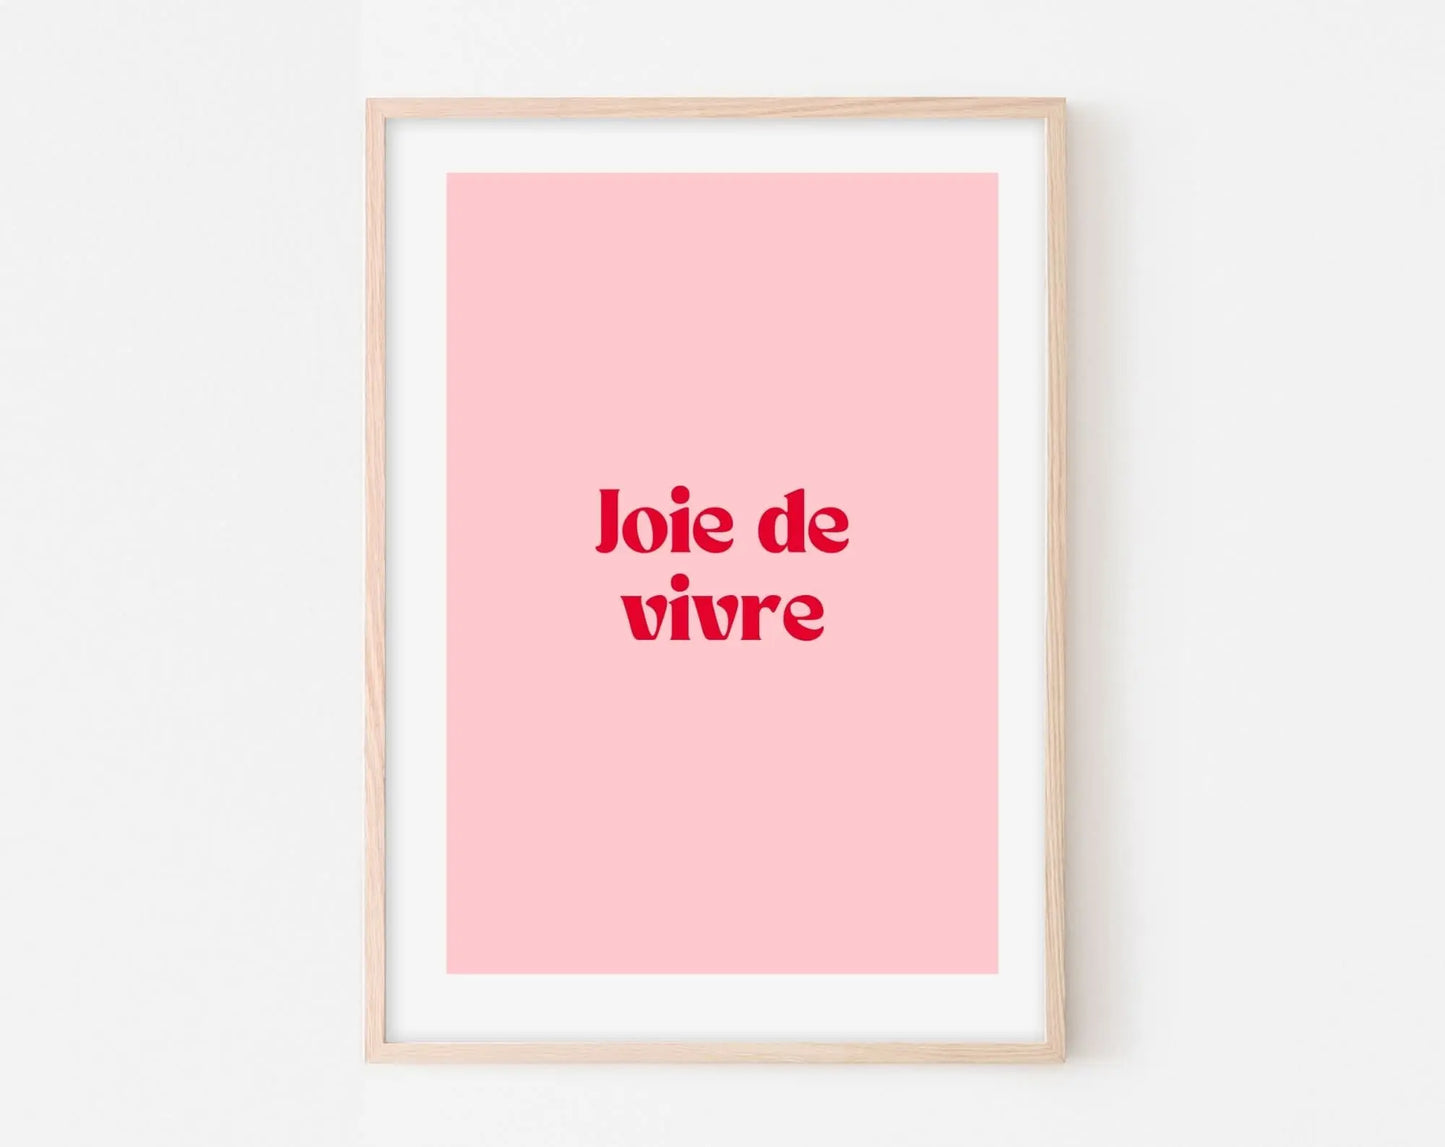 Affiche Joie de vivre - Affiche citation rose - Pink affiche  - Poster à imprimer FLTMfrance